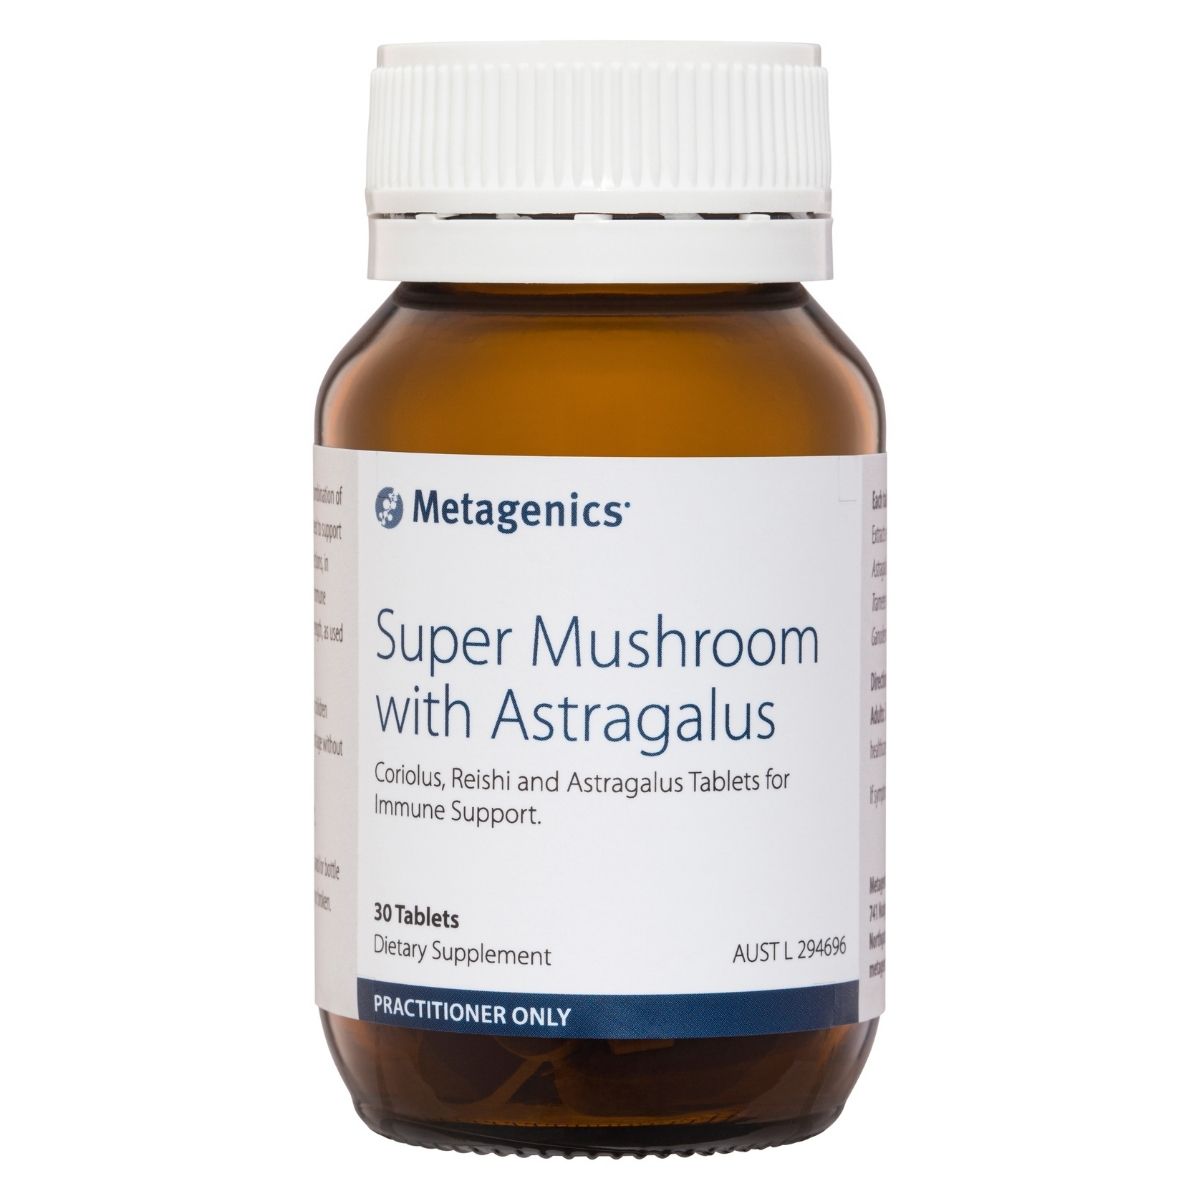 Metagenics Super Mushroom with Astragalus